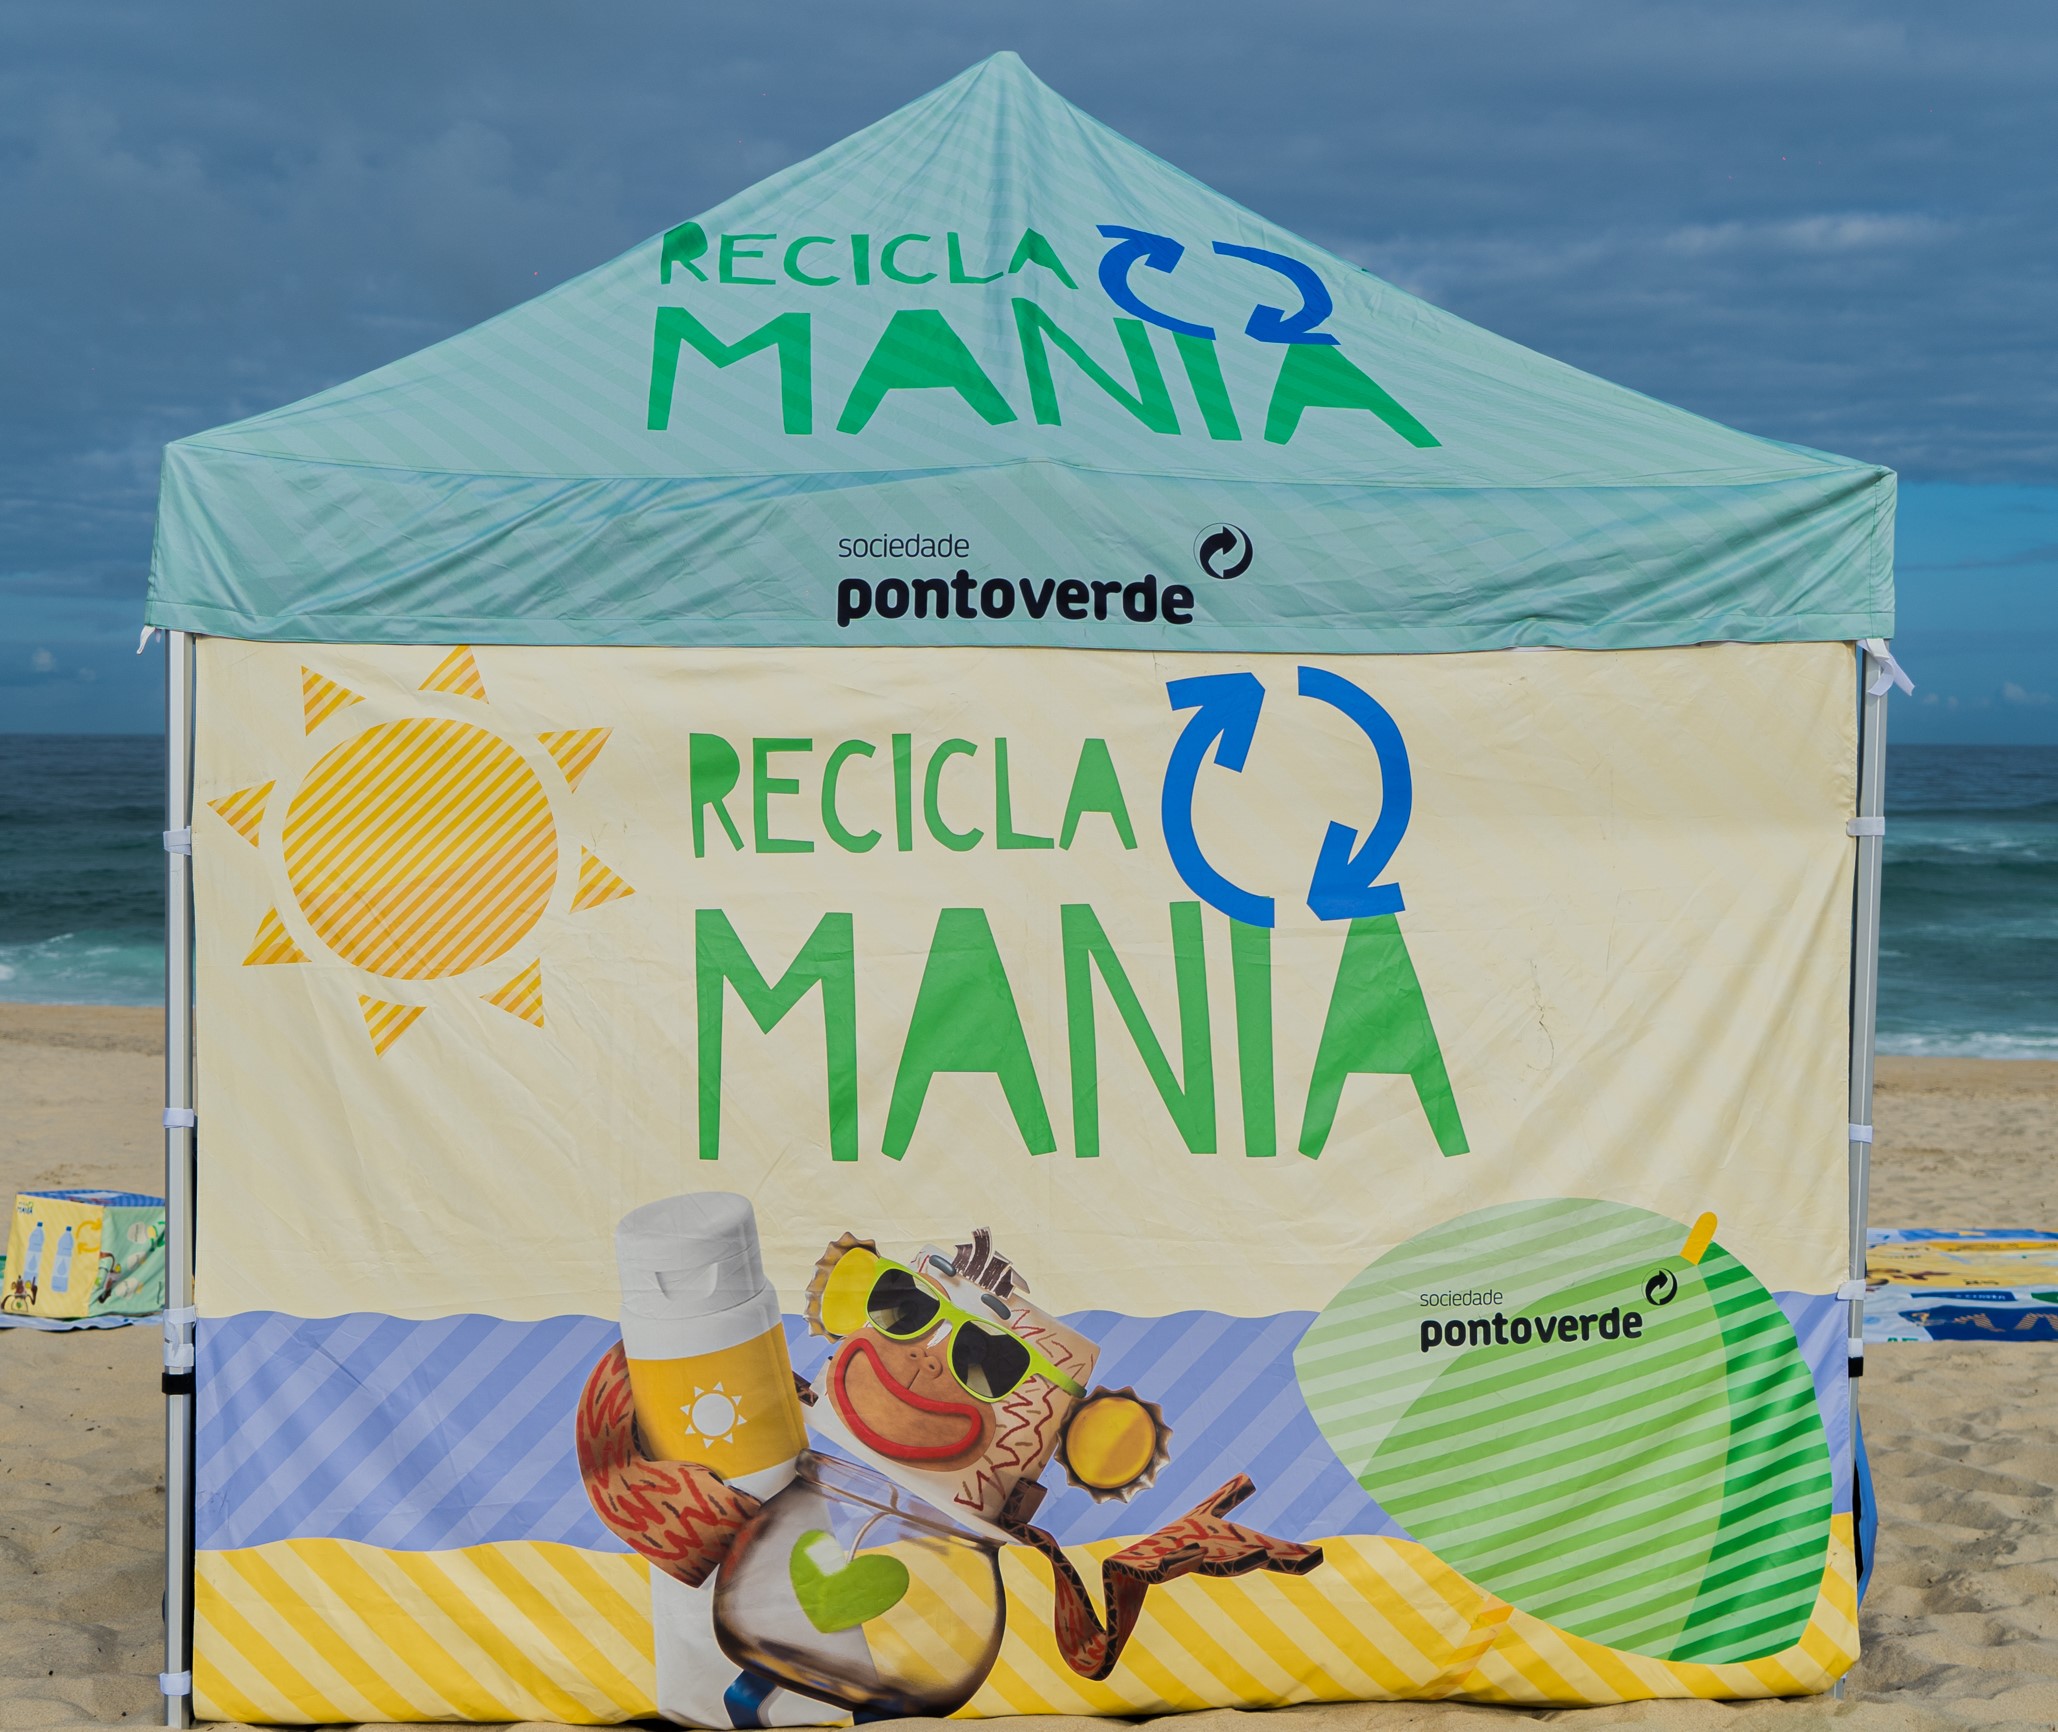 Jogo de tabuleiro gigante nas praias ensina a reciclar